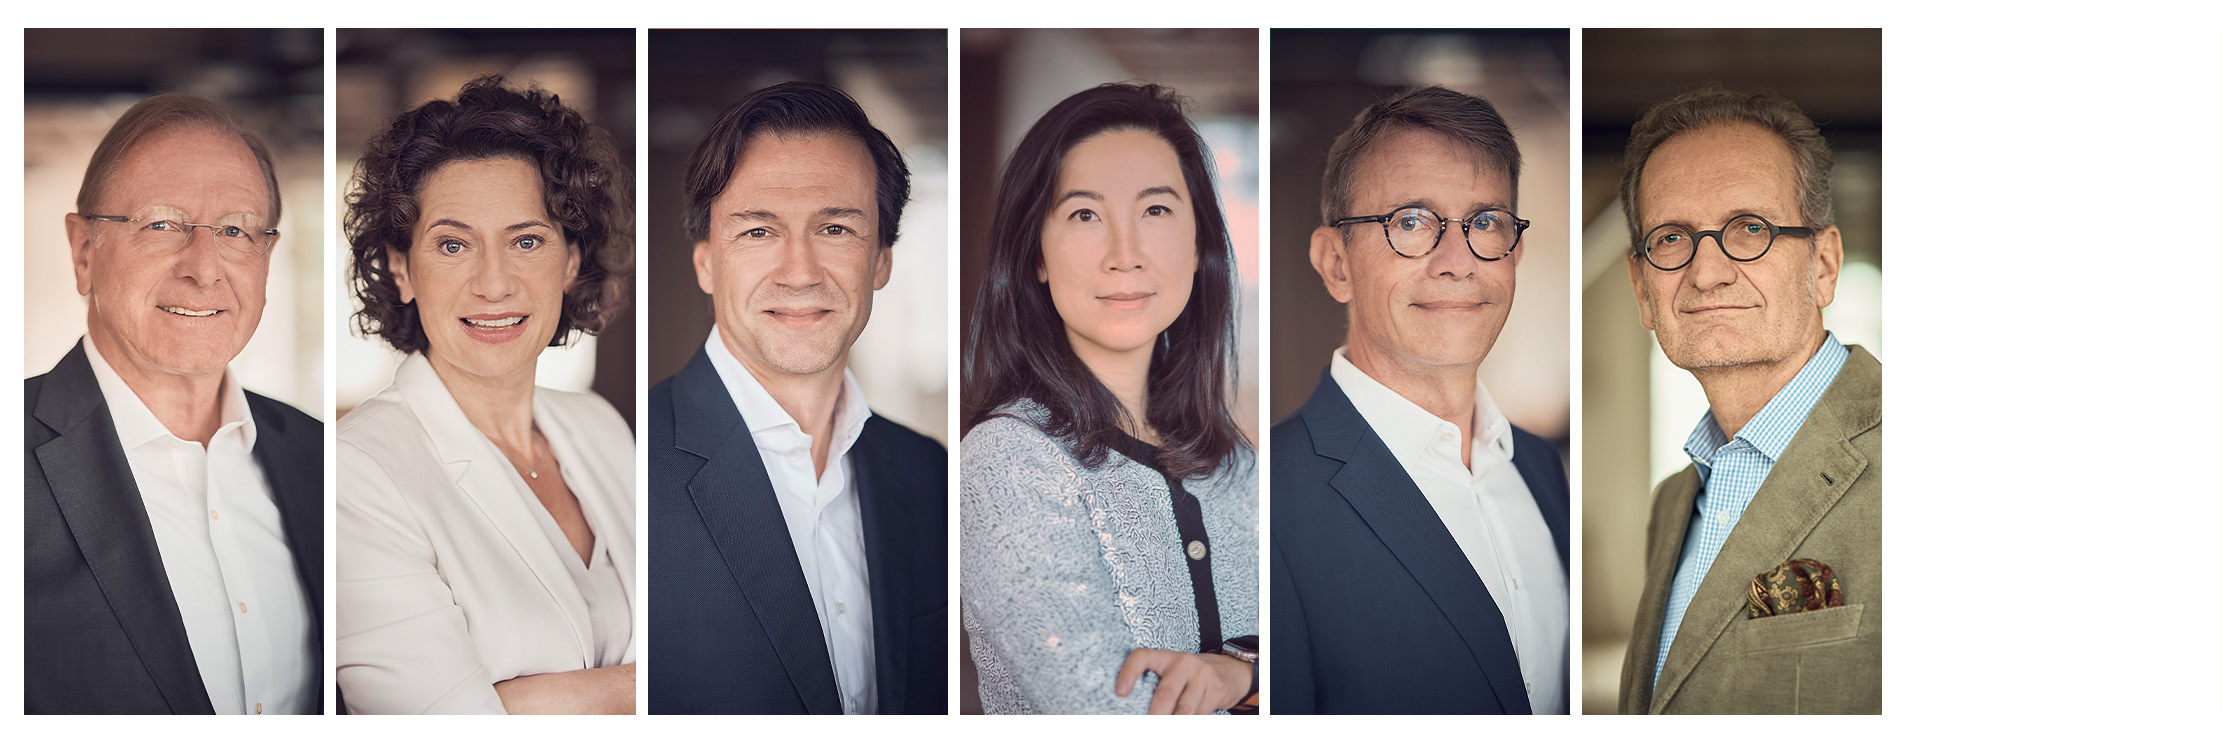 Meet the Board of Directors: Prof. Stefan Feuerstein, Prof. Dr. Andréa Belliger, Florian Seubert, Rongrong Hu, Dr. Christian Mielsch, Walter Oberhänsli (from left to right)